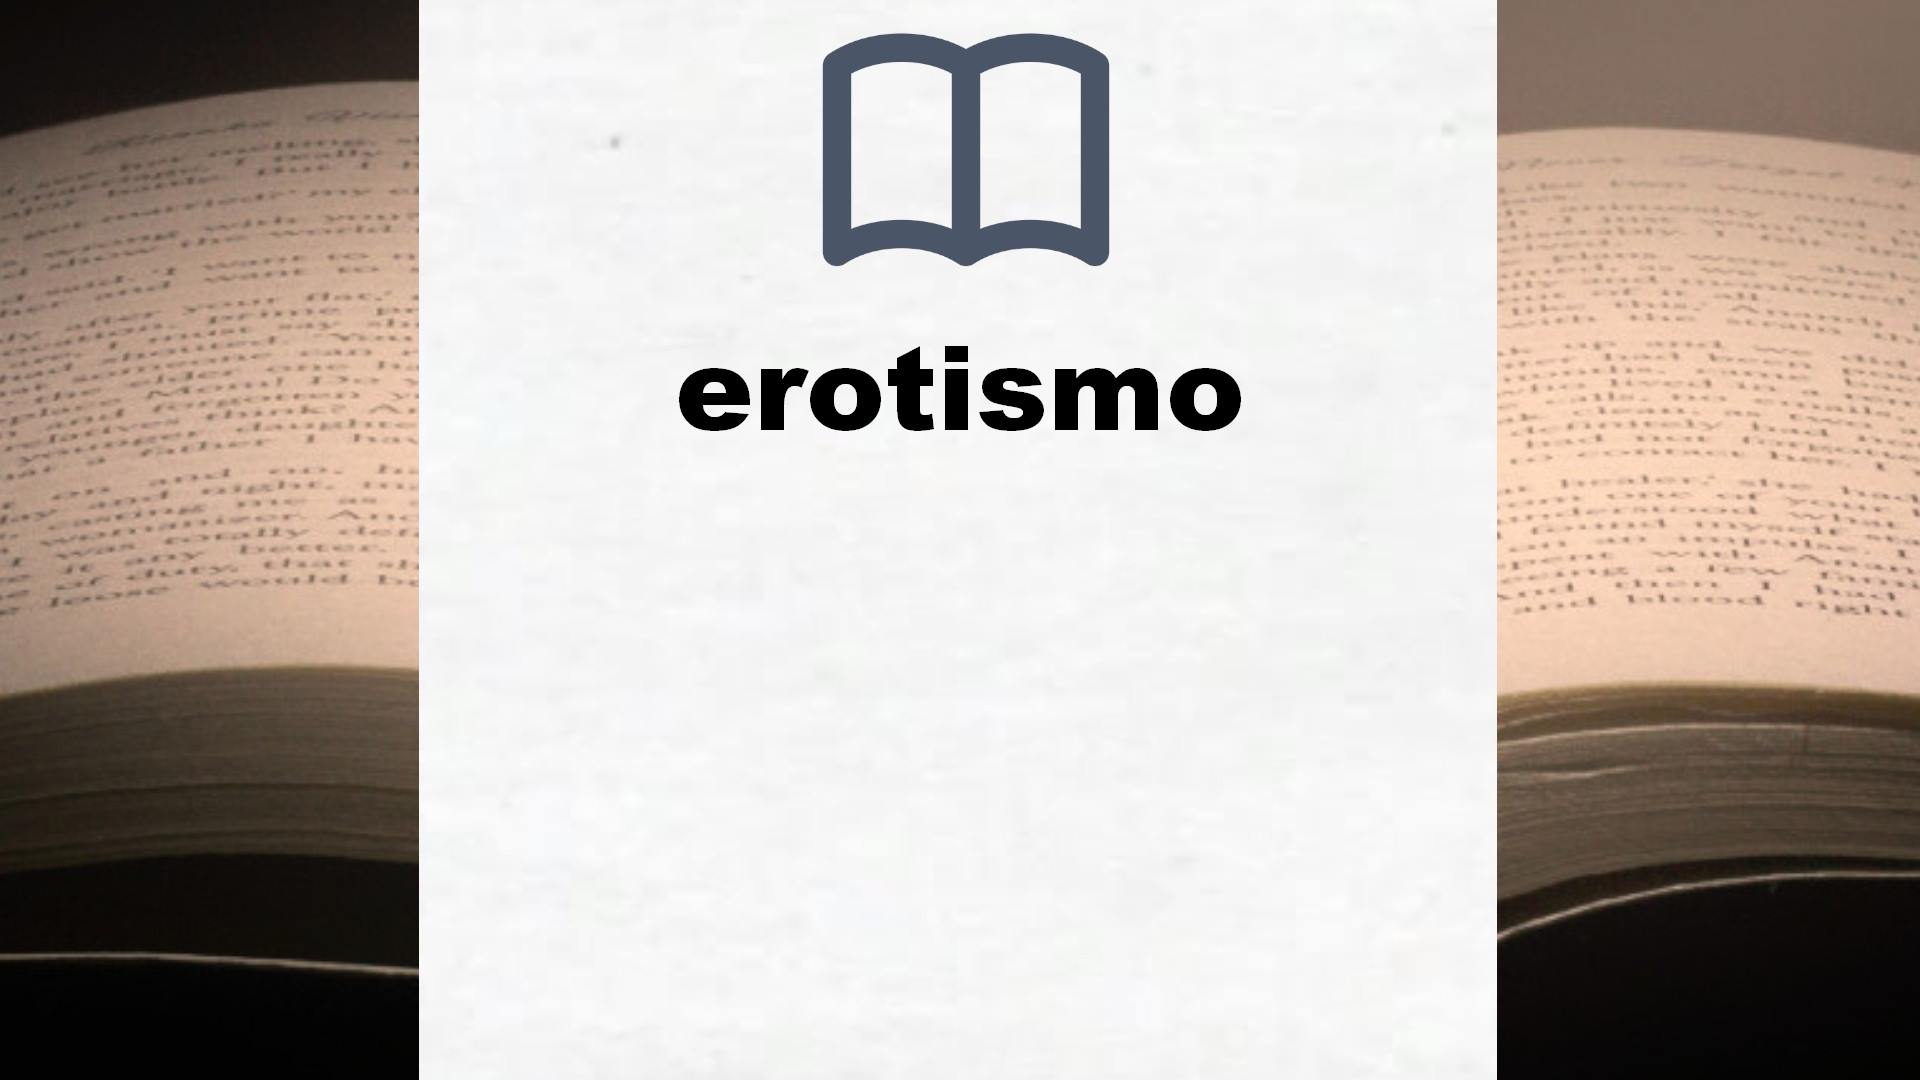 Libros sobre erotismo